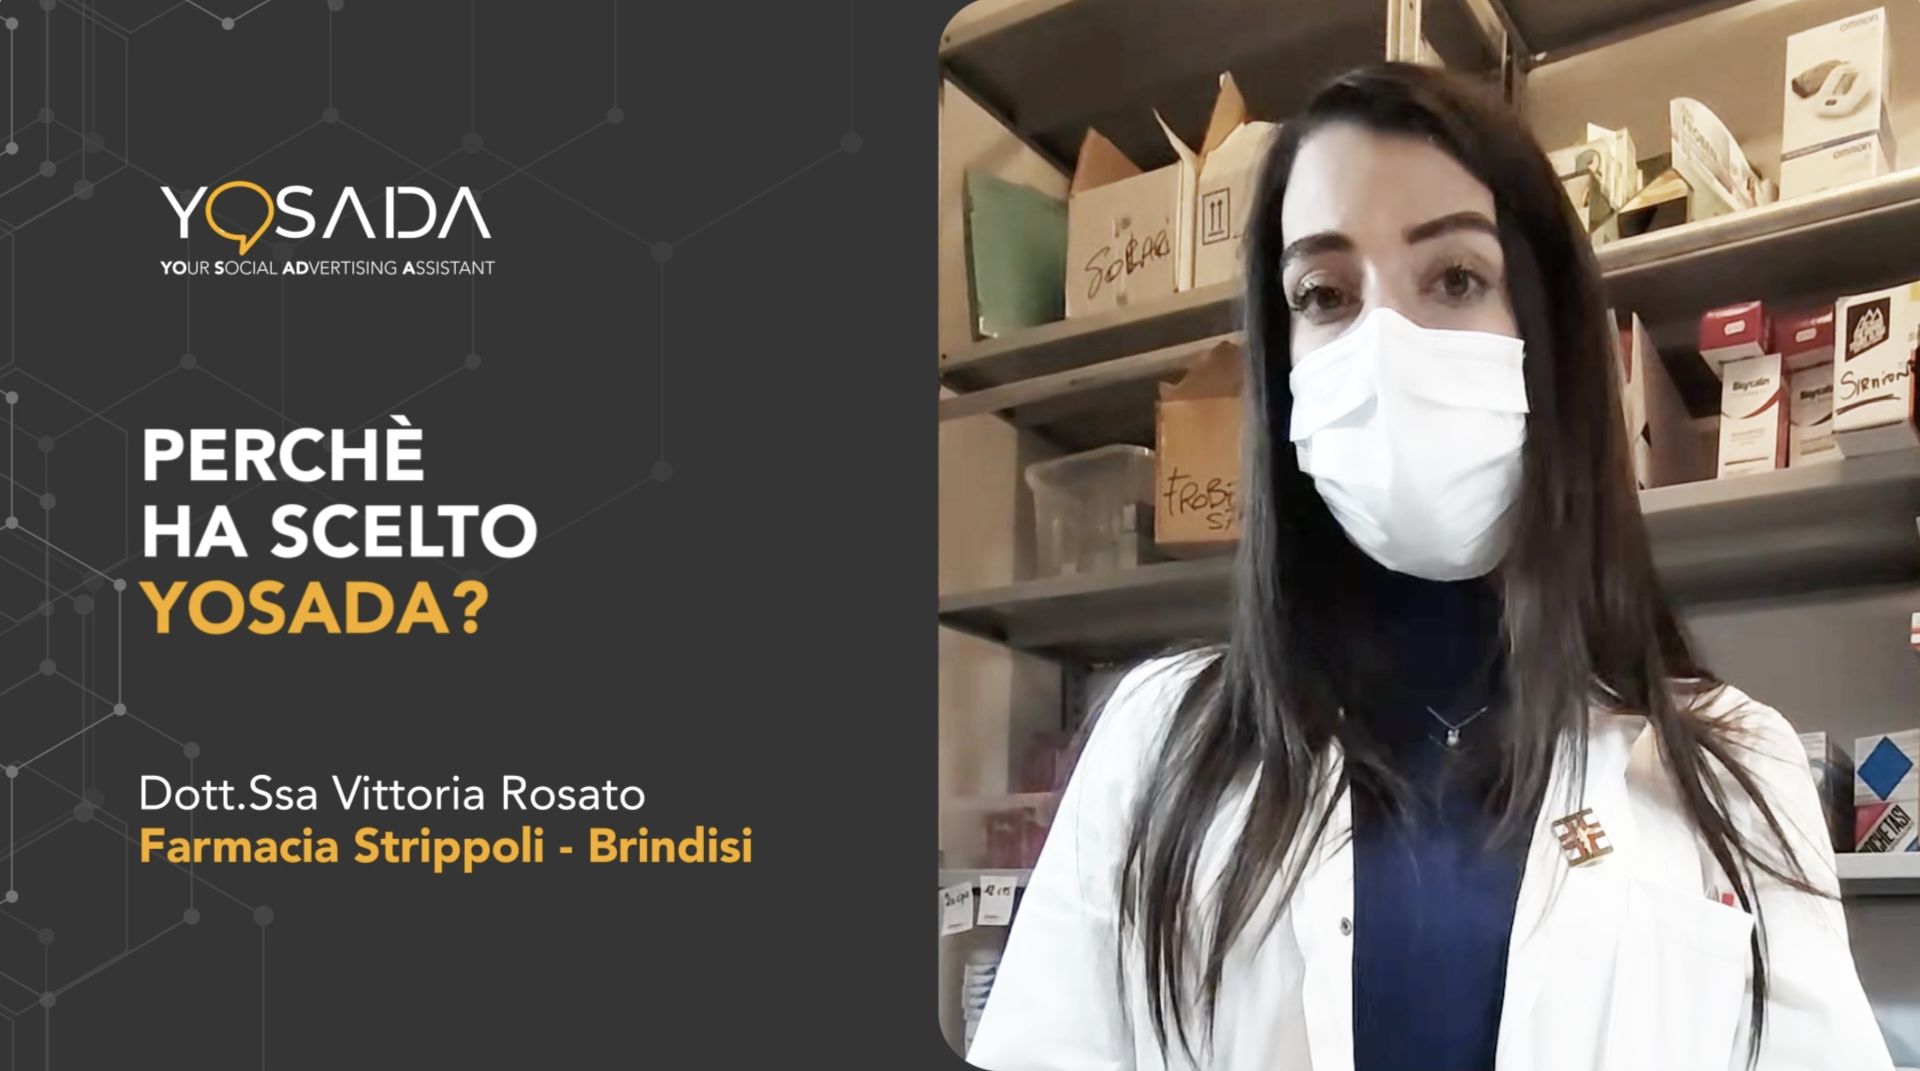 Dott.ssa Vittoria Rosato